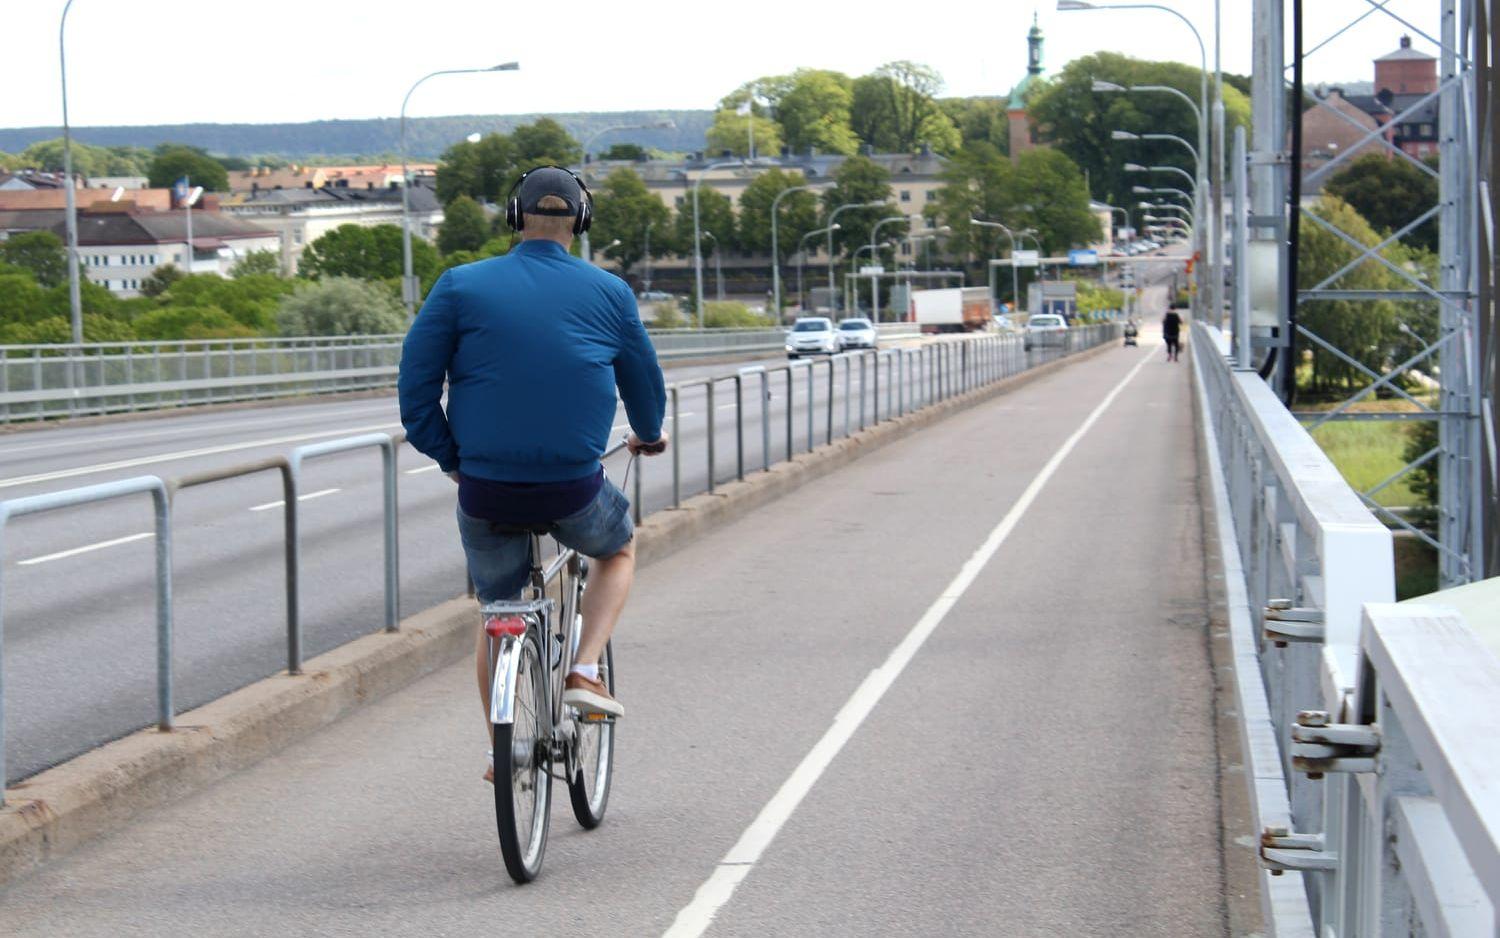 Rullar på. Cykelvägen på Dalbobron in mot Vänersborg bjuder på lättvindig cykling. Och så är utsikten över Vänern och staden förstås också magnifik.